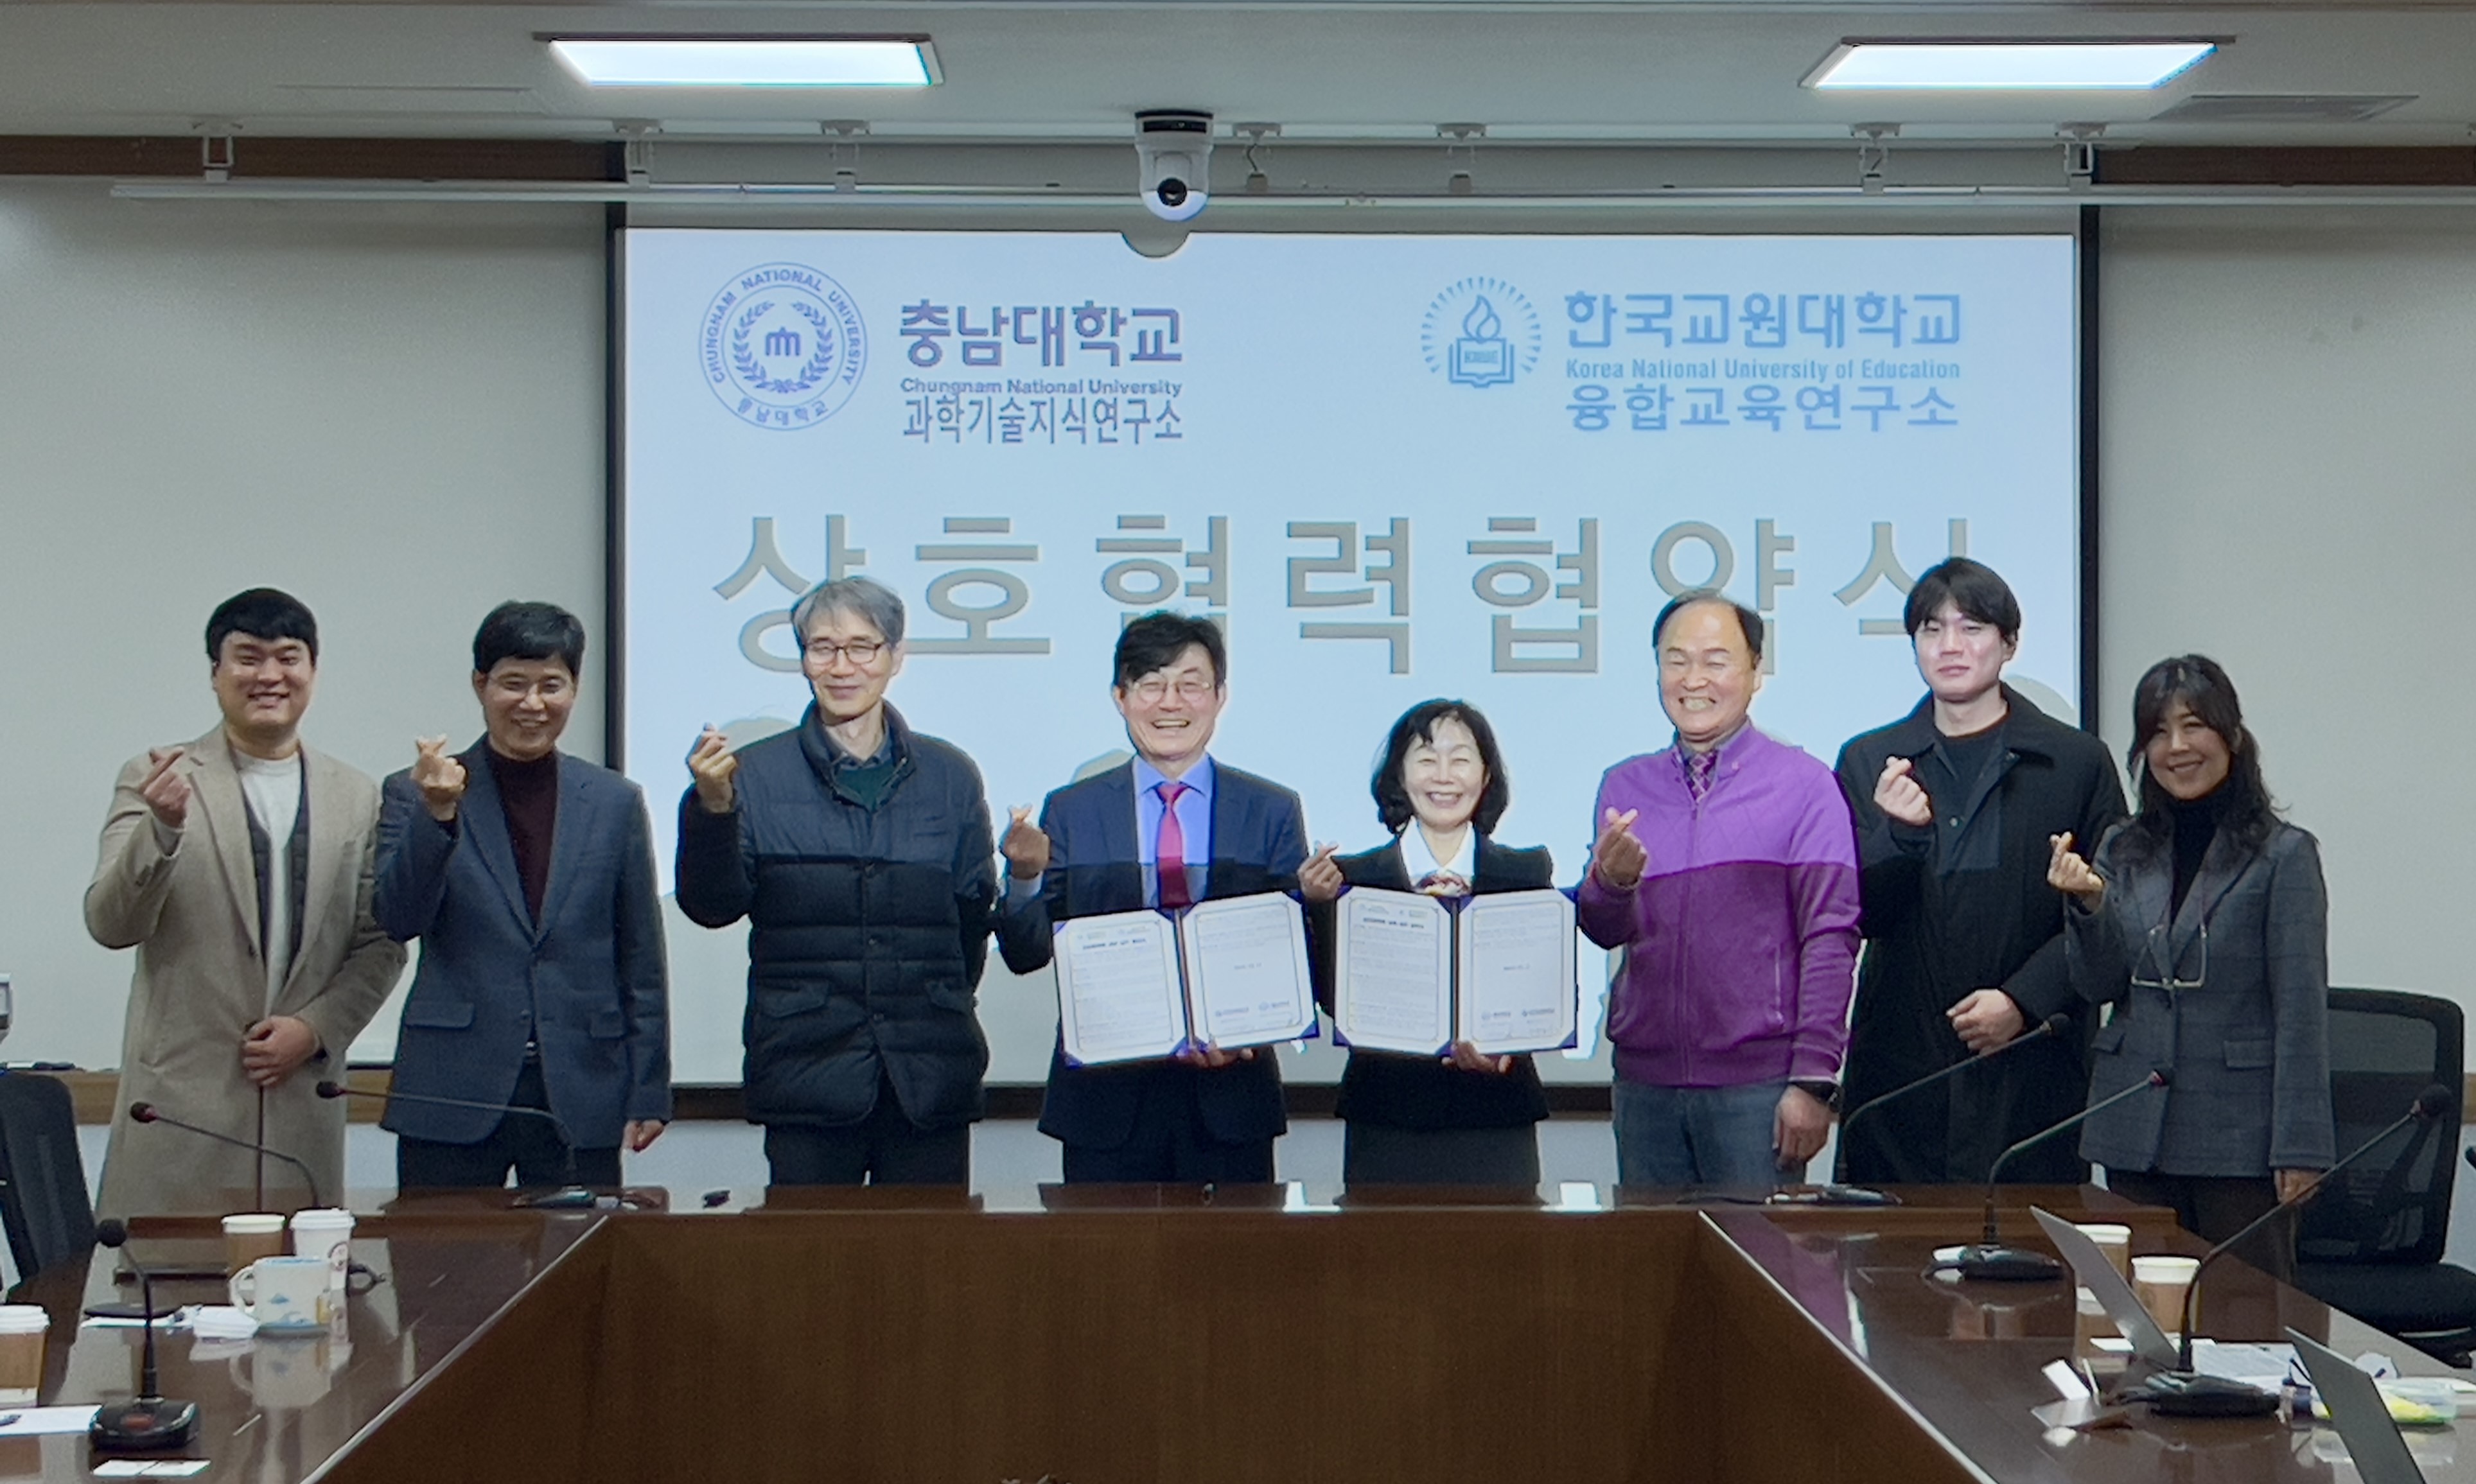 과학기술지식연구소-한국교원대 융합교육연구소, 업무협약 체결 사진